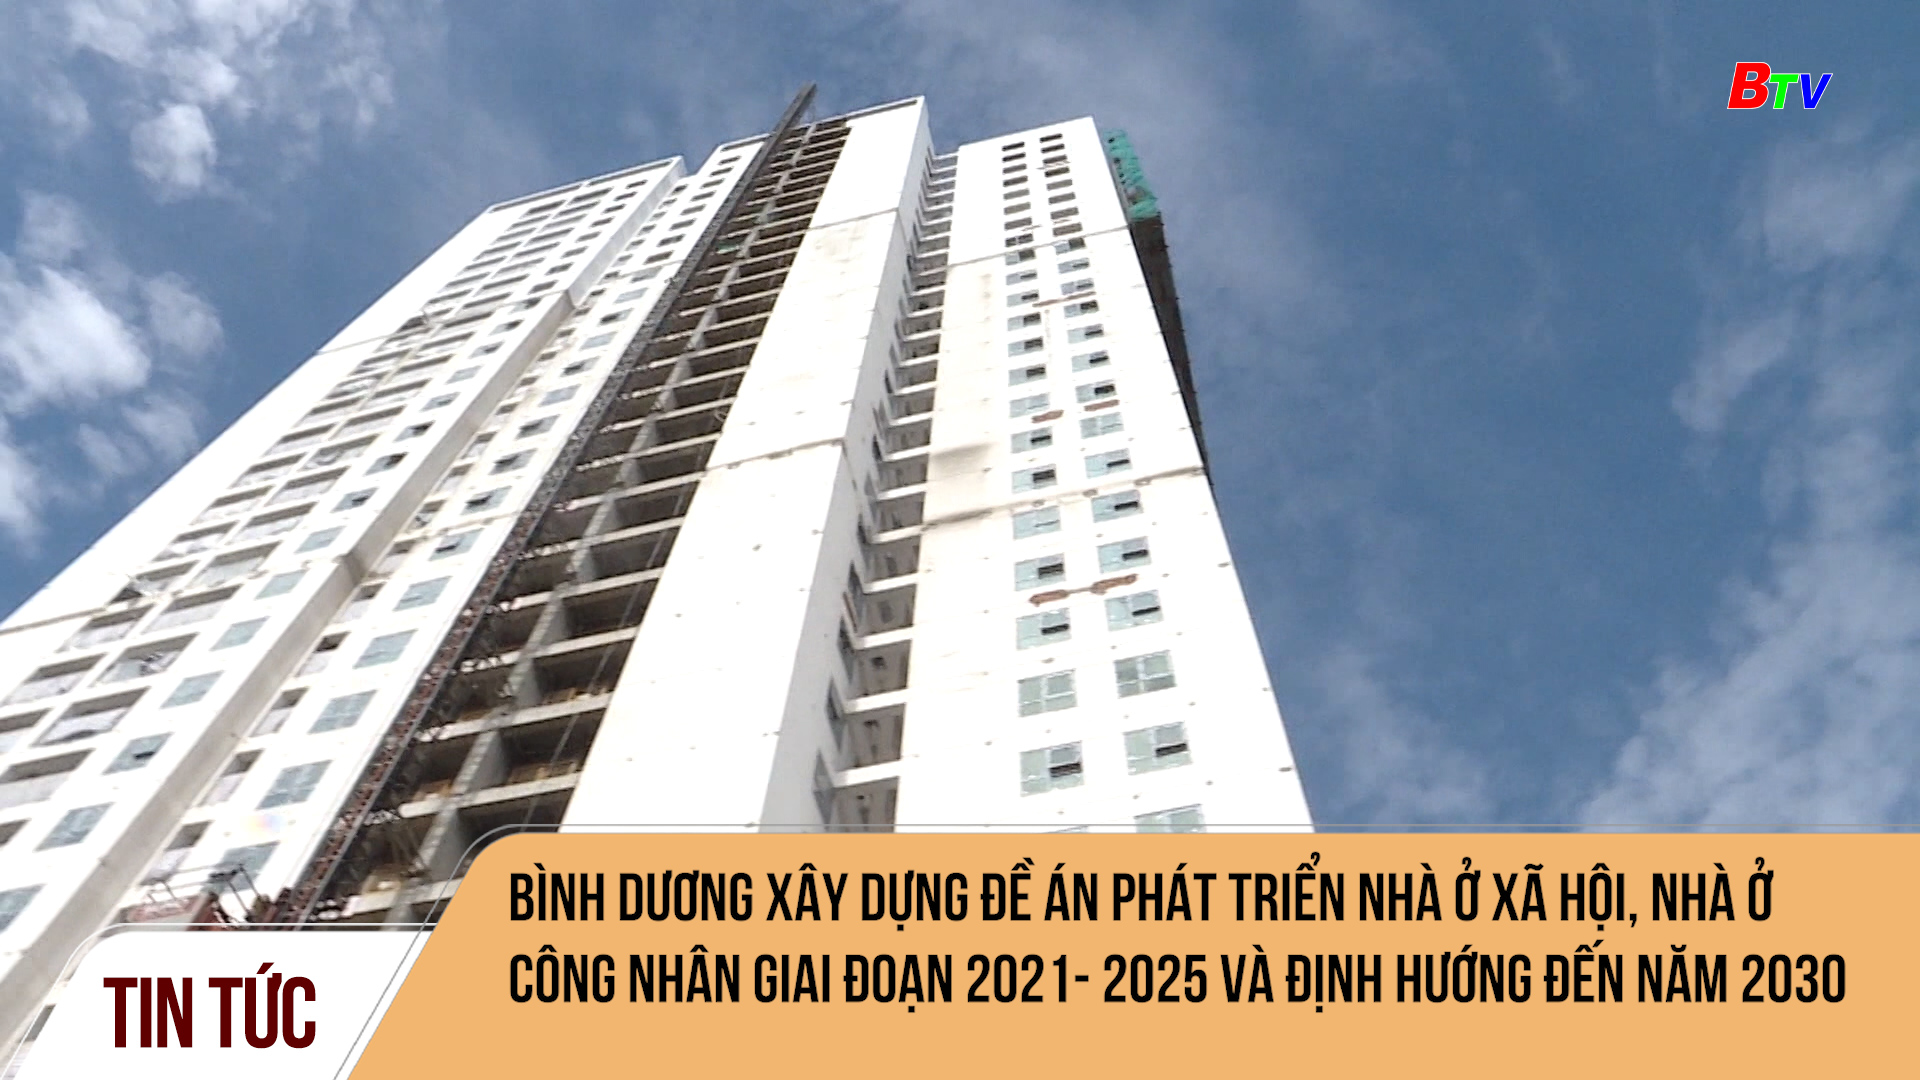 Bình Dương xây dựng đề án phát triển nhà ở xã hội, nhà ở công nhân giai đoạn 2021- 2025 và định hướng đến năm 2030